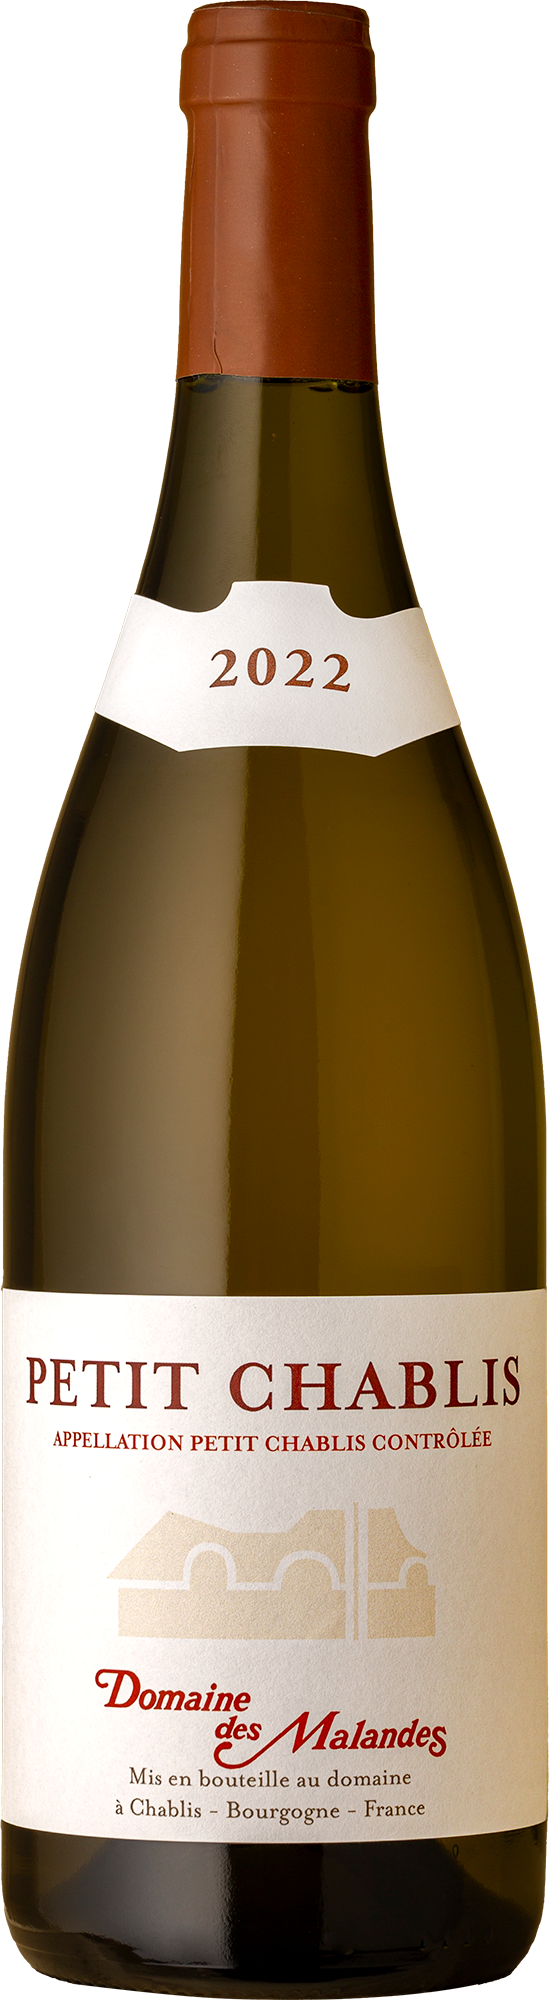 Domaine des Malandes - AOC Petite Chablis 2022 White Wine